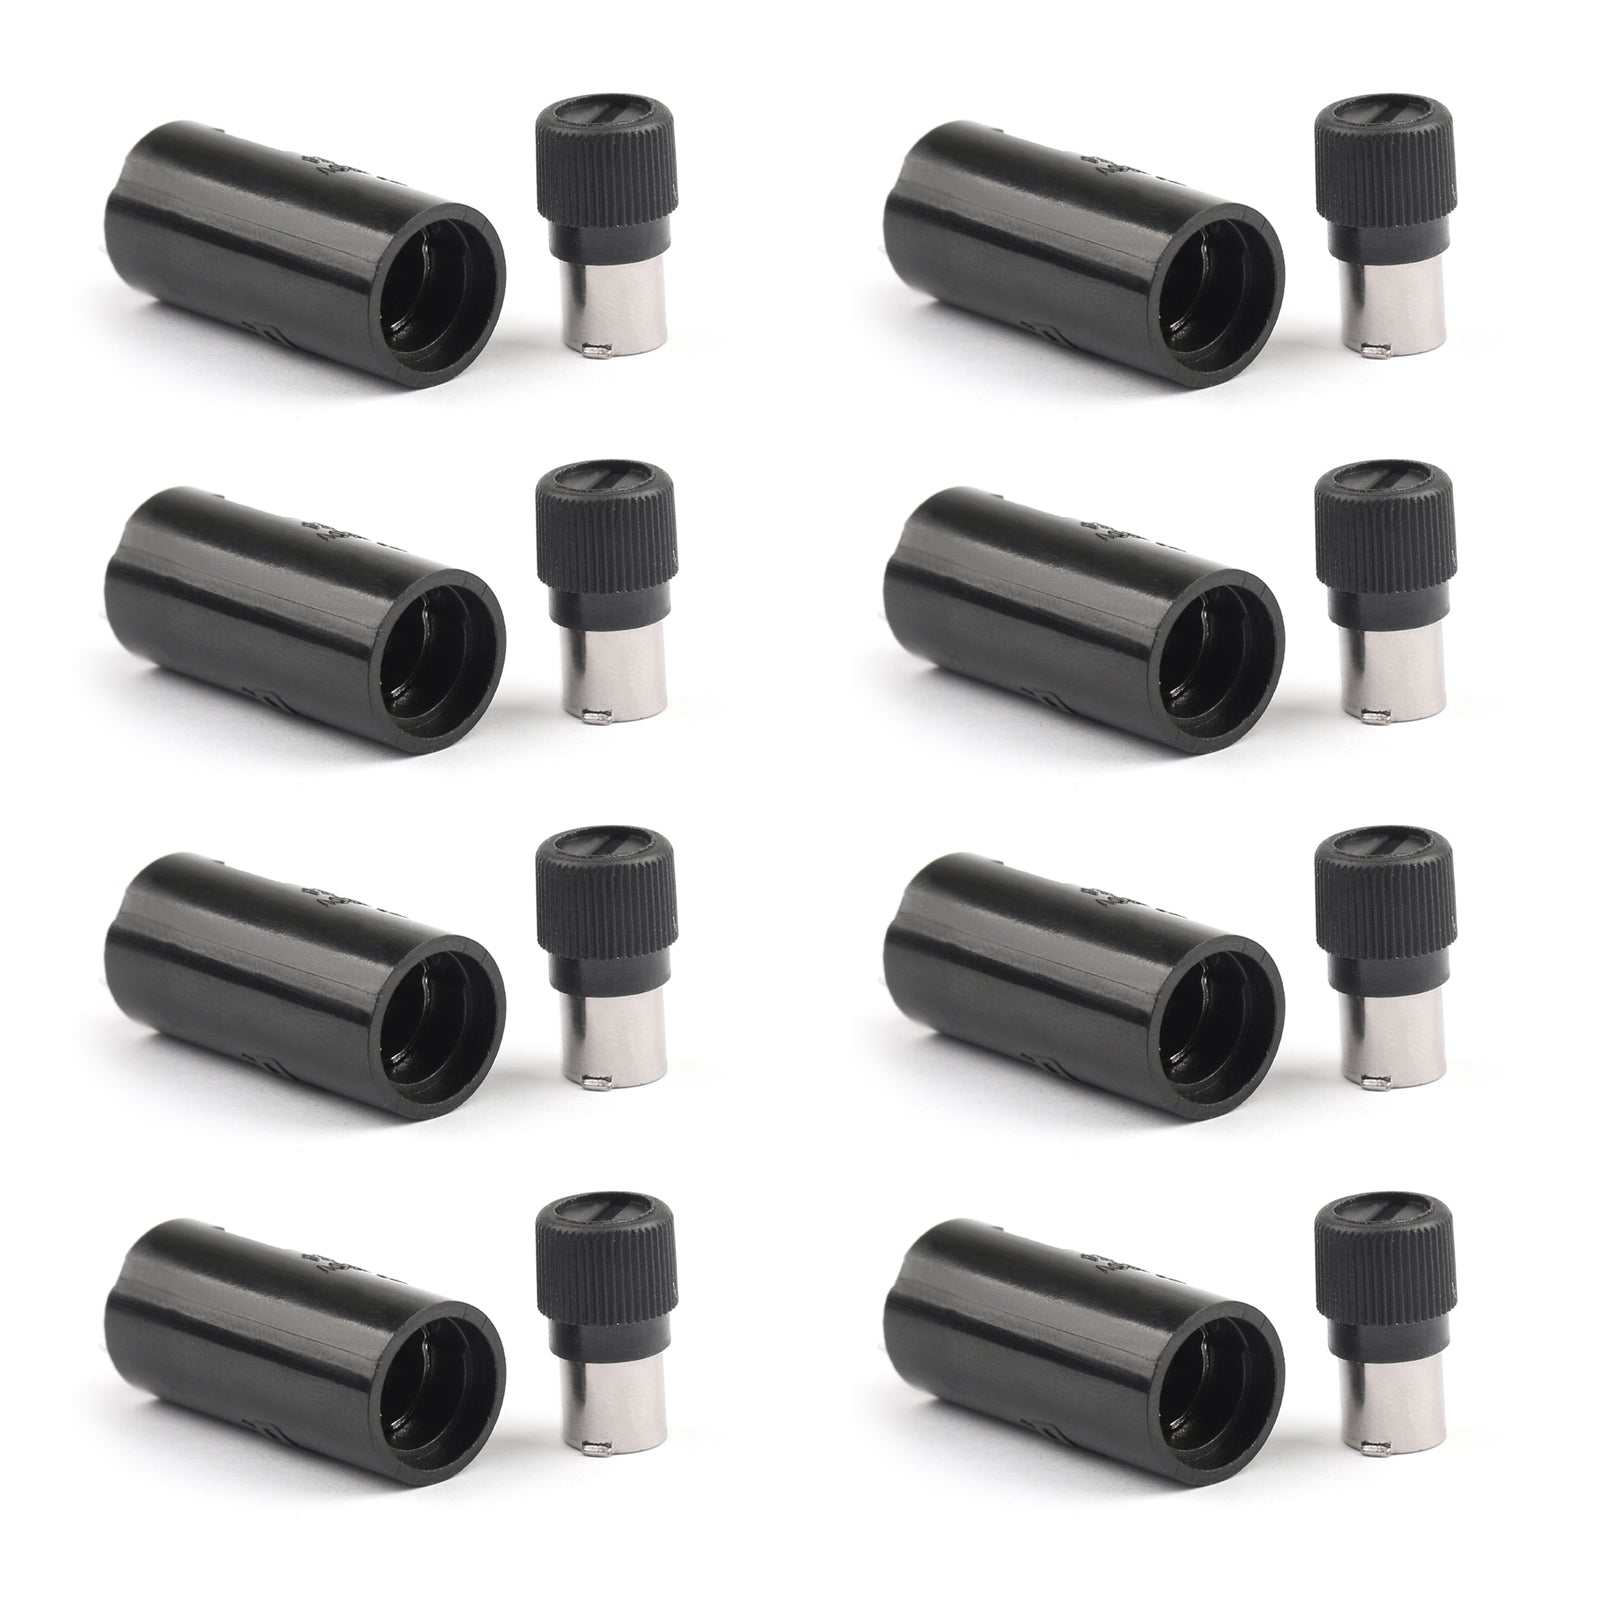 Portafusibles de PCB vertical SCI R3-24 para fusibles de vidrio de 5x20 mm 10A 250V